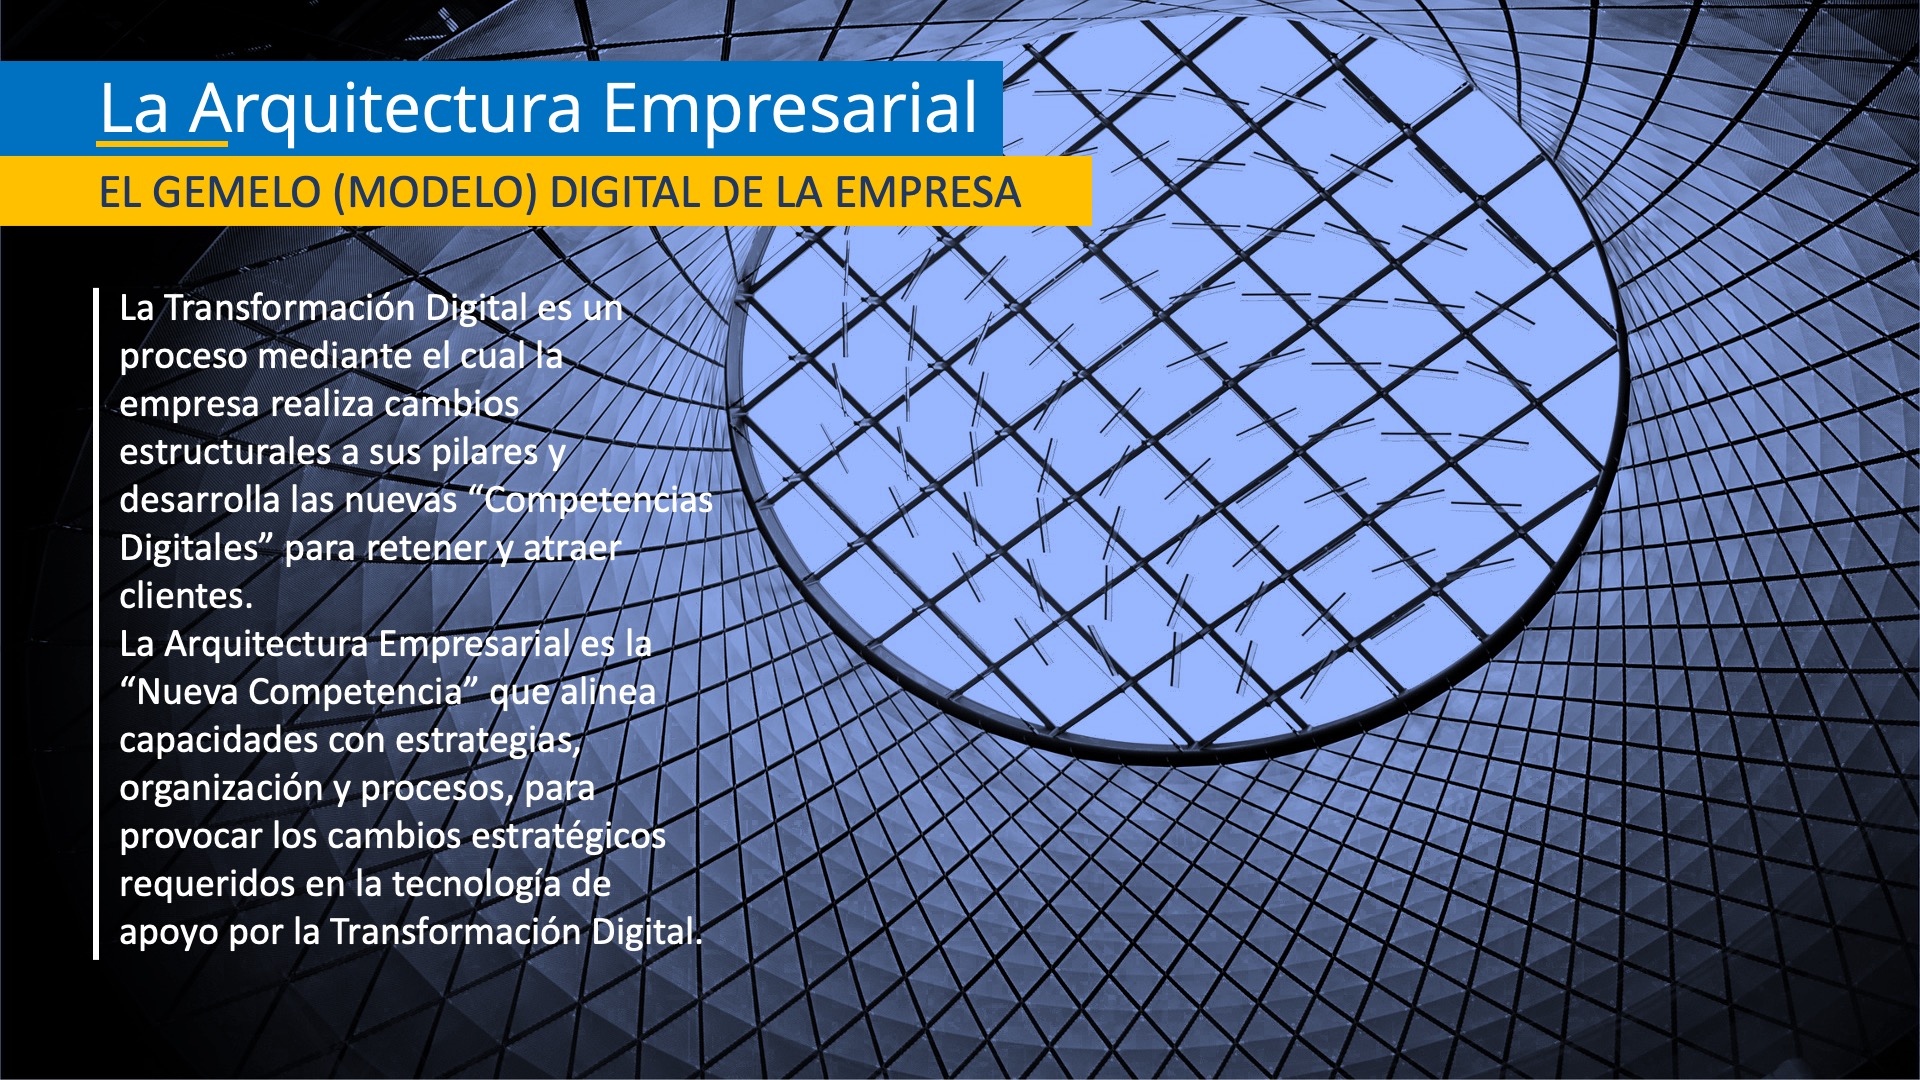 Representación conceptual de la Arquitectura Empresarial, como Gemelo Digital de la empresa